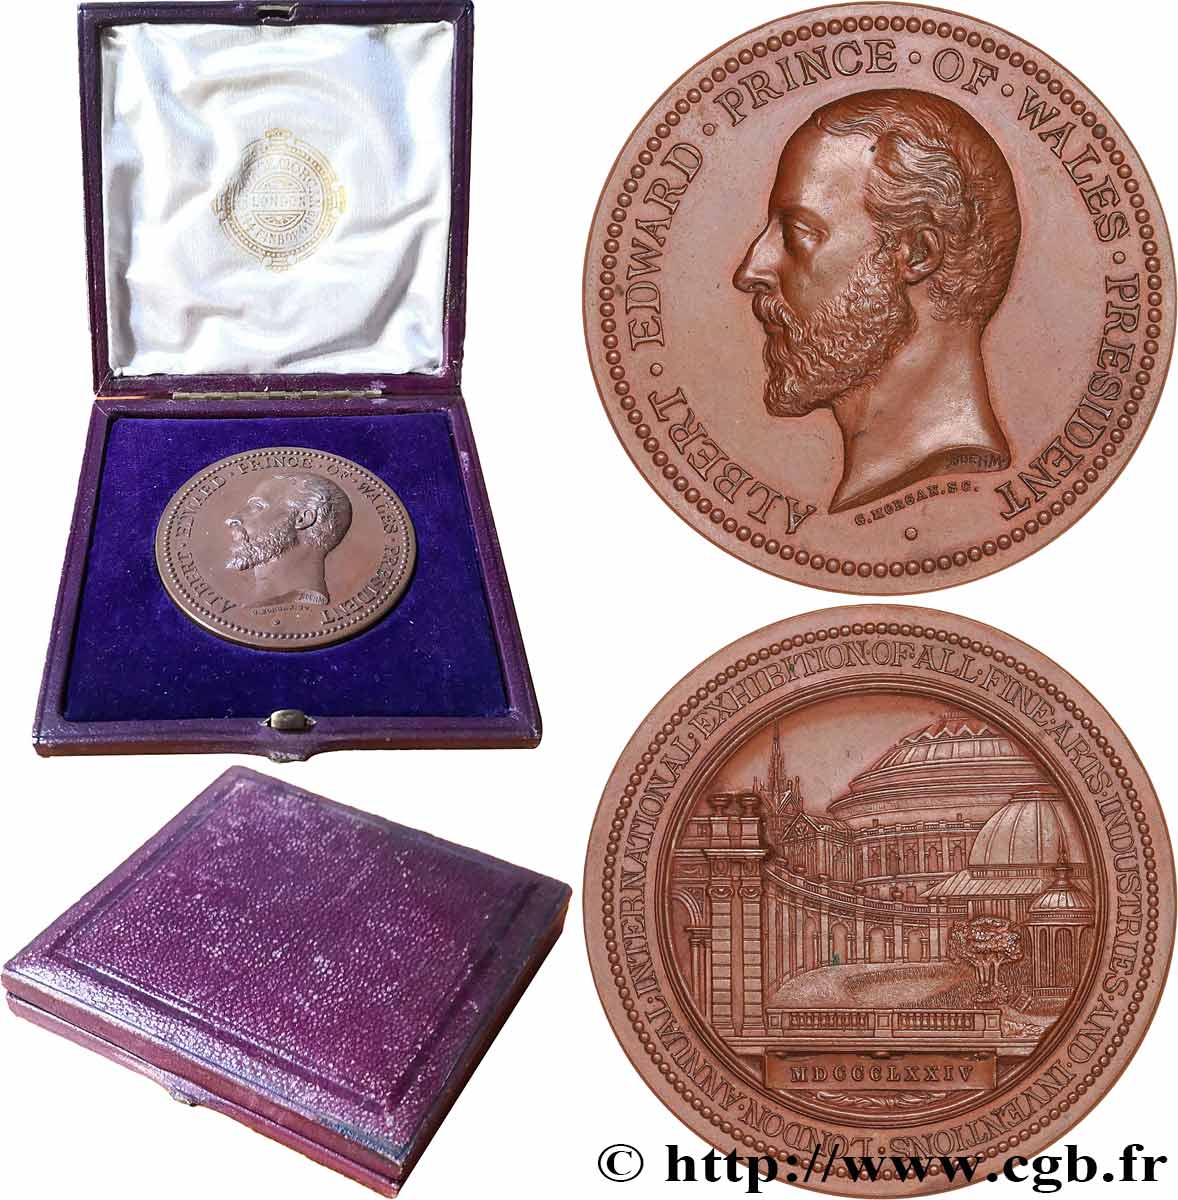 GRANDE BRETAGNE - VICTORIA Médaille, Prince Albert, Exposition internationale des arts et industrie SUP